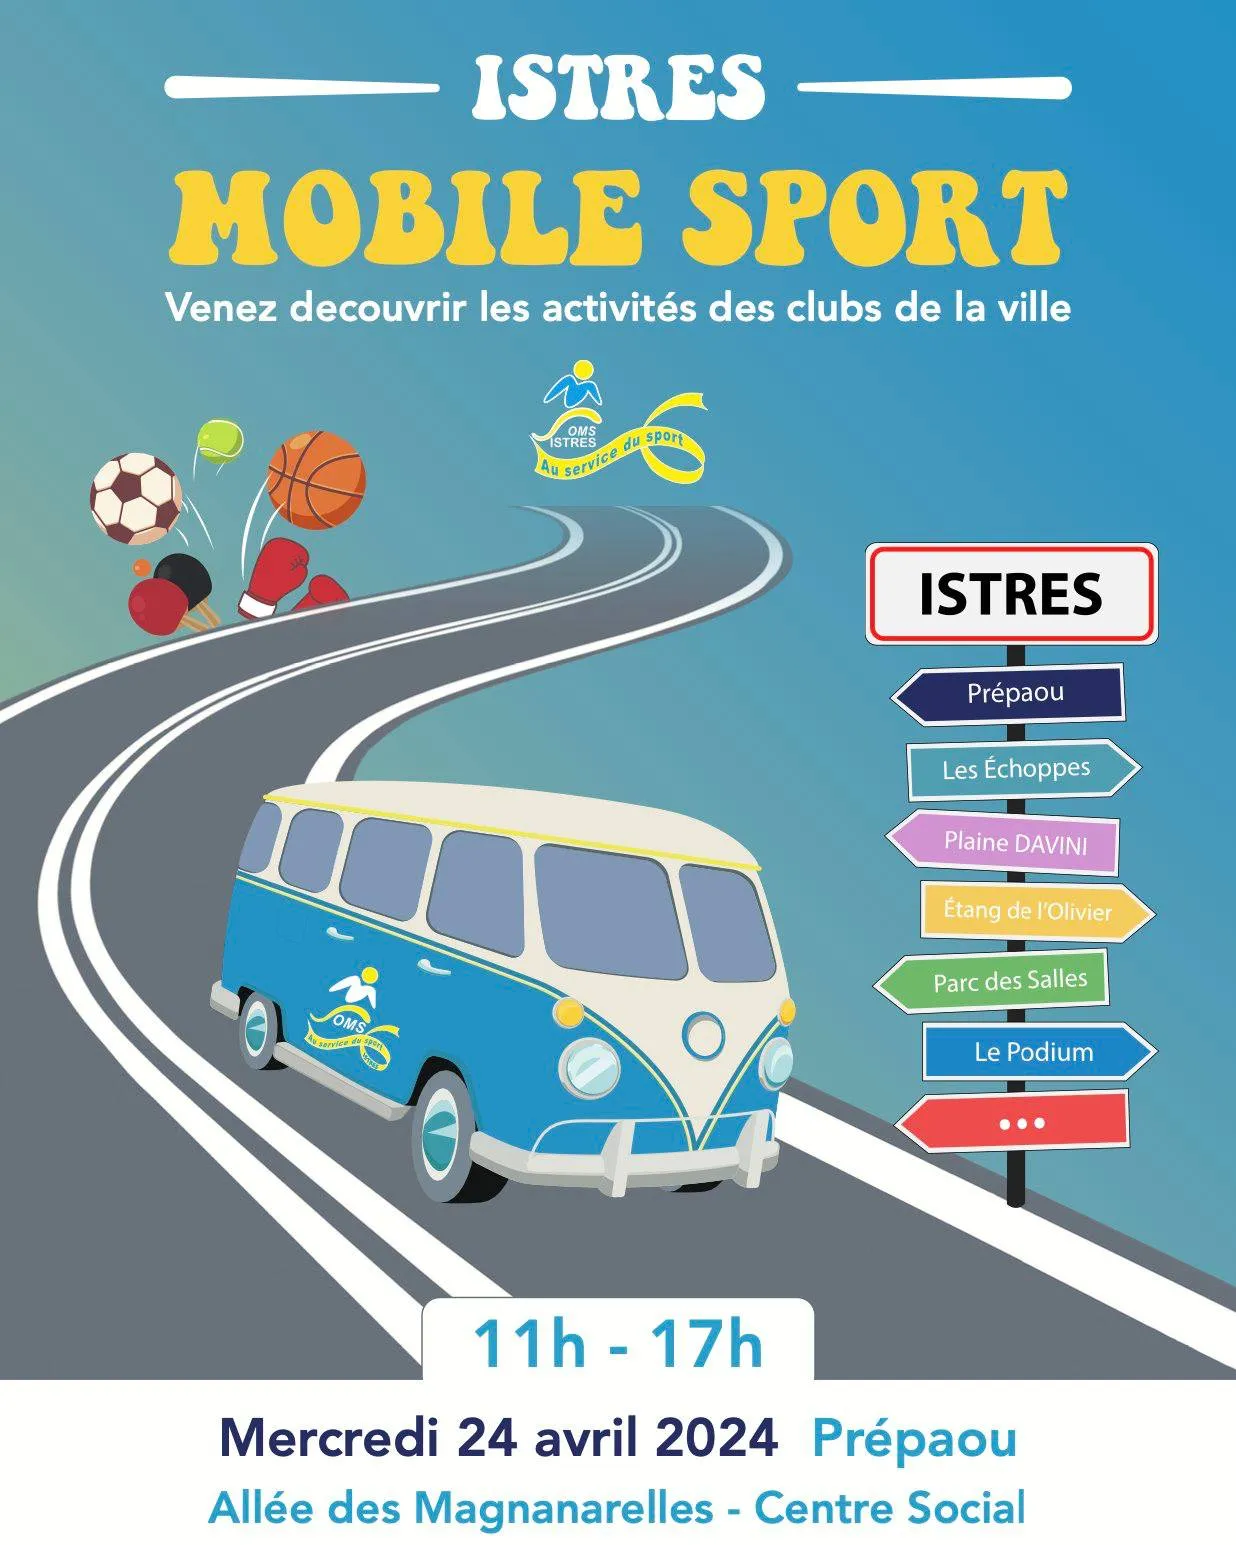 Image qui illustre: Istres Mobil'sport à Istres - 1